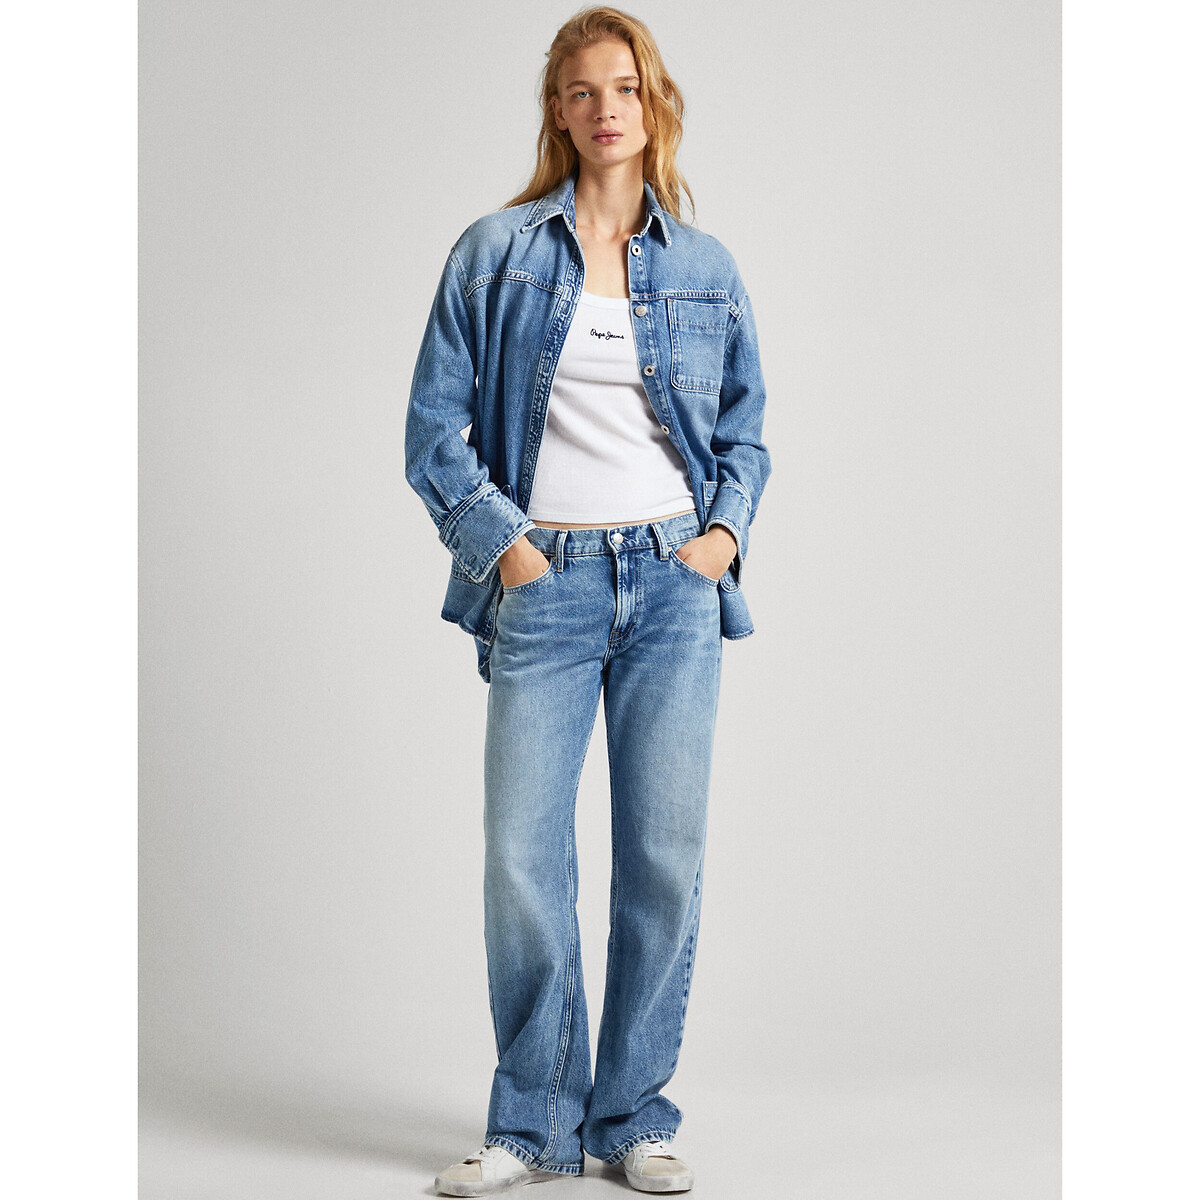 Куртка из джинсовой ткани с завязками  XS/S синий LaRedoute, размер XS/S Куртка из джинсовой ткани с завязками  XS/S синий - фото 4